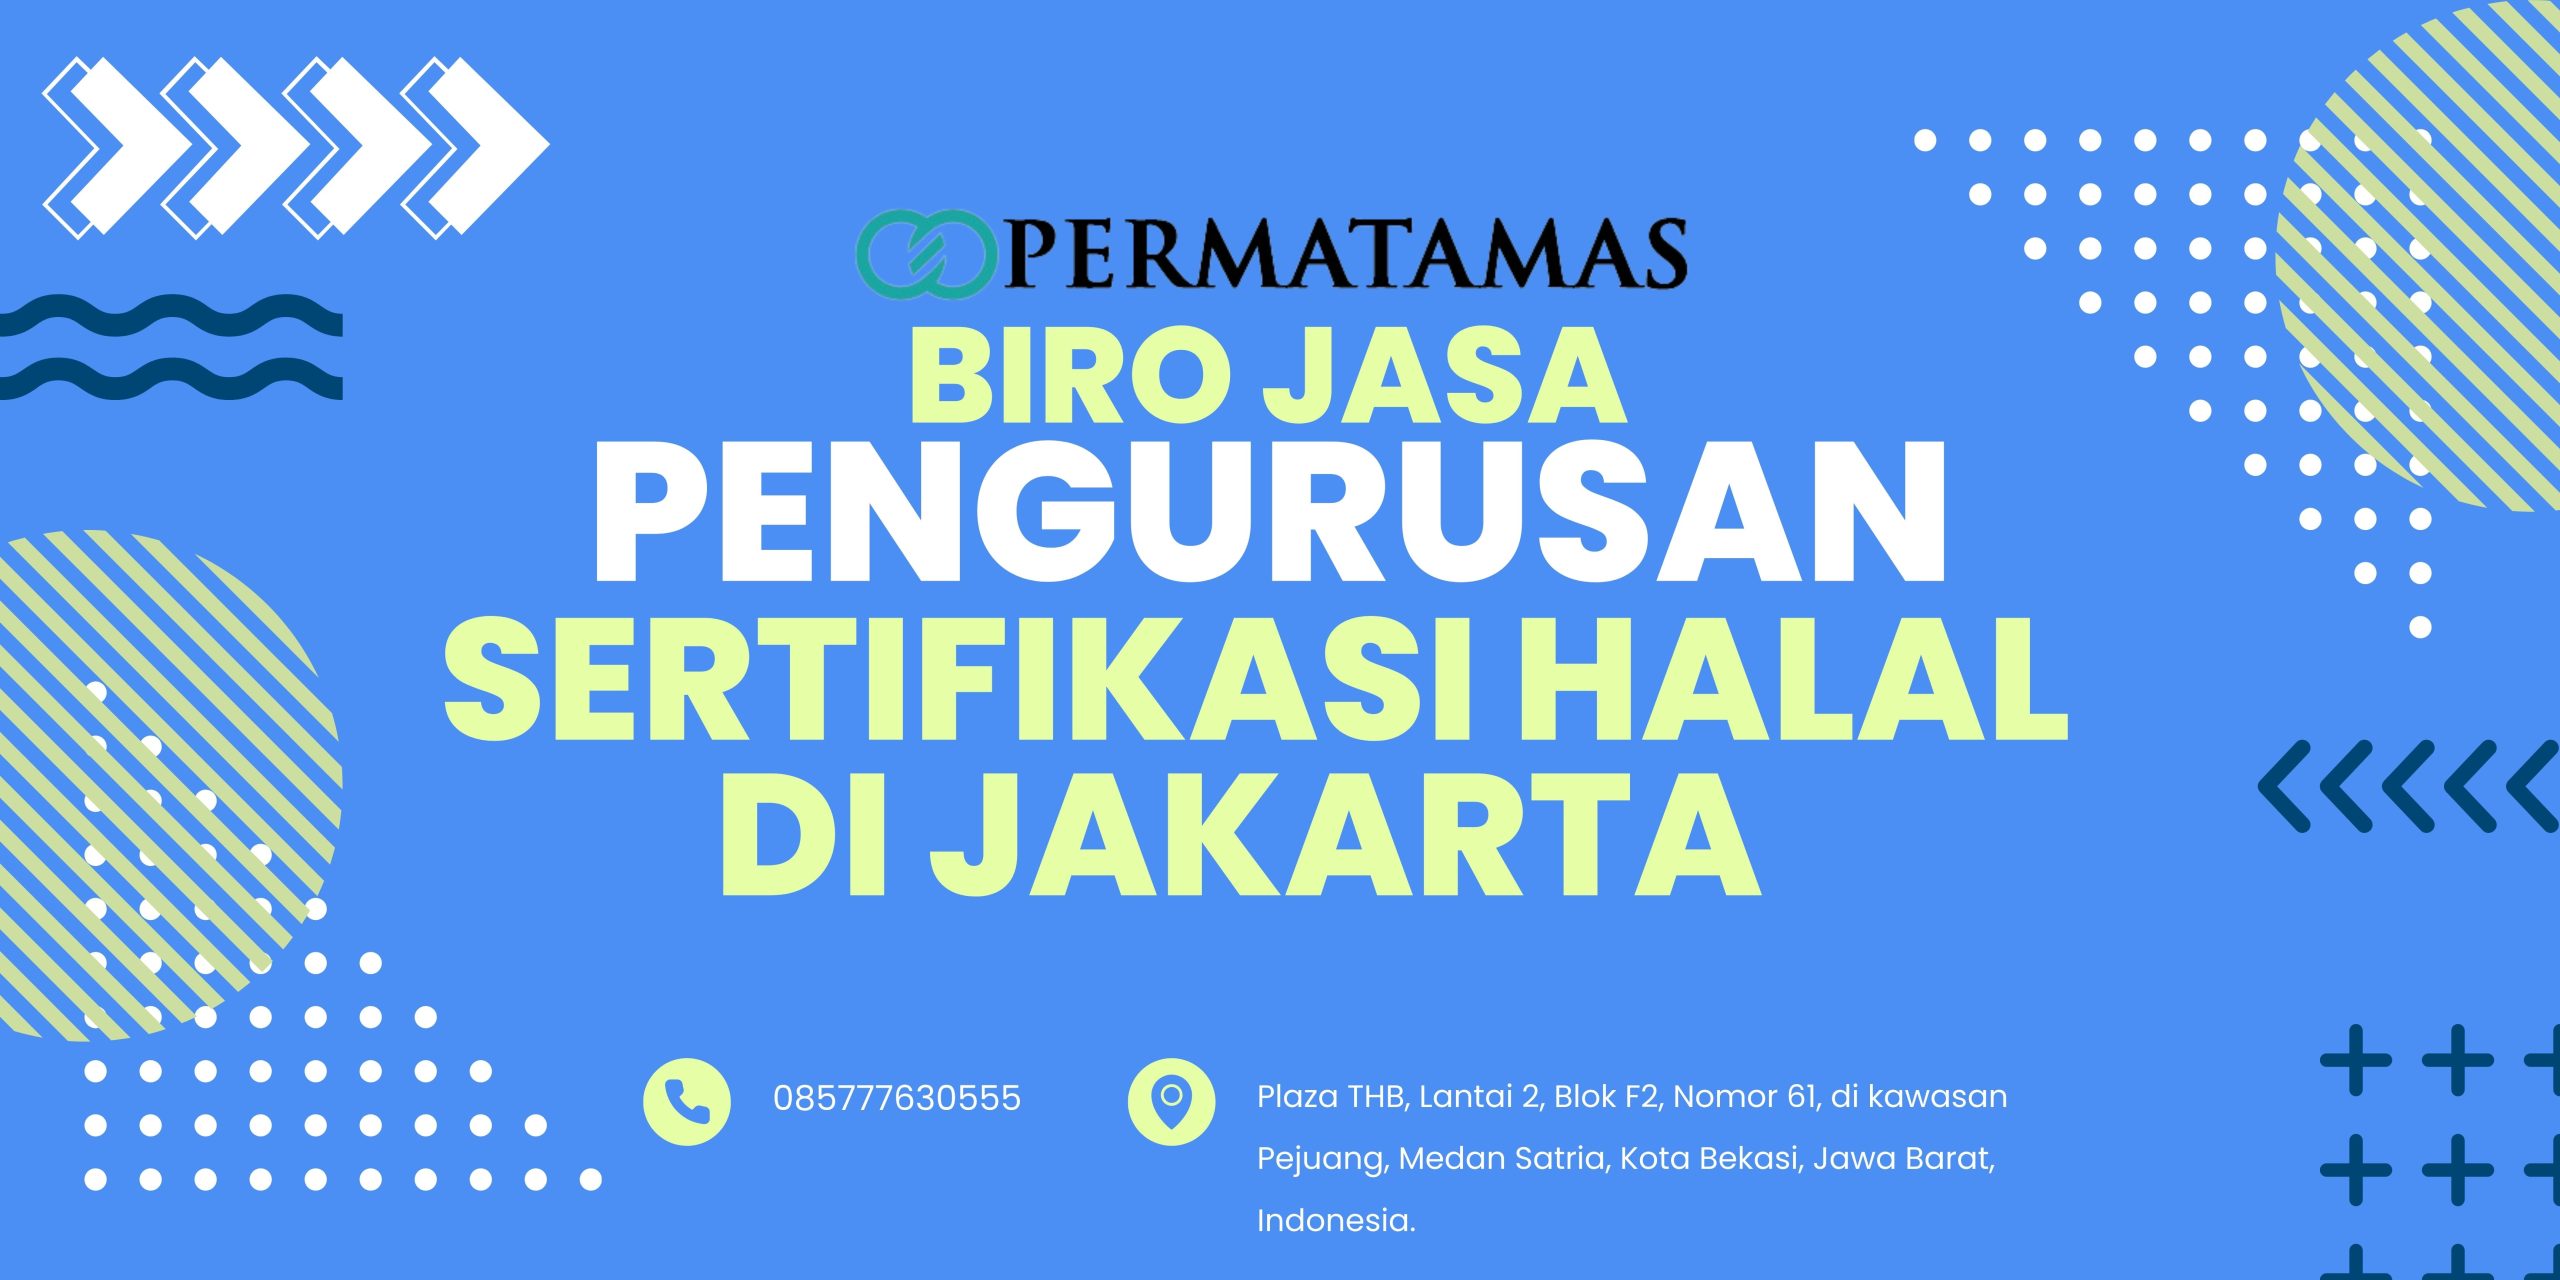 Biro Jasa Pengurusan Sertifikasi Halal di Jakarta